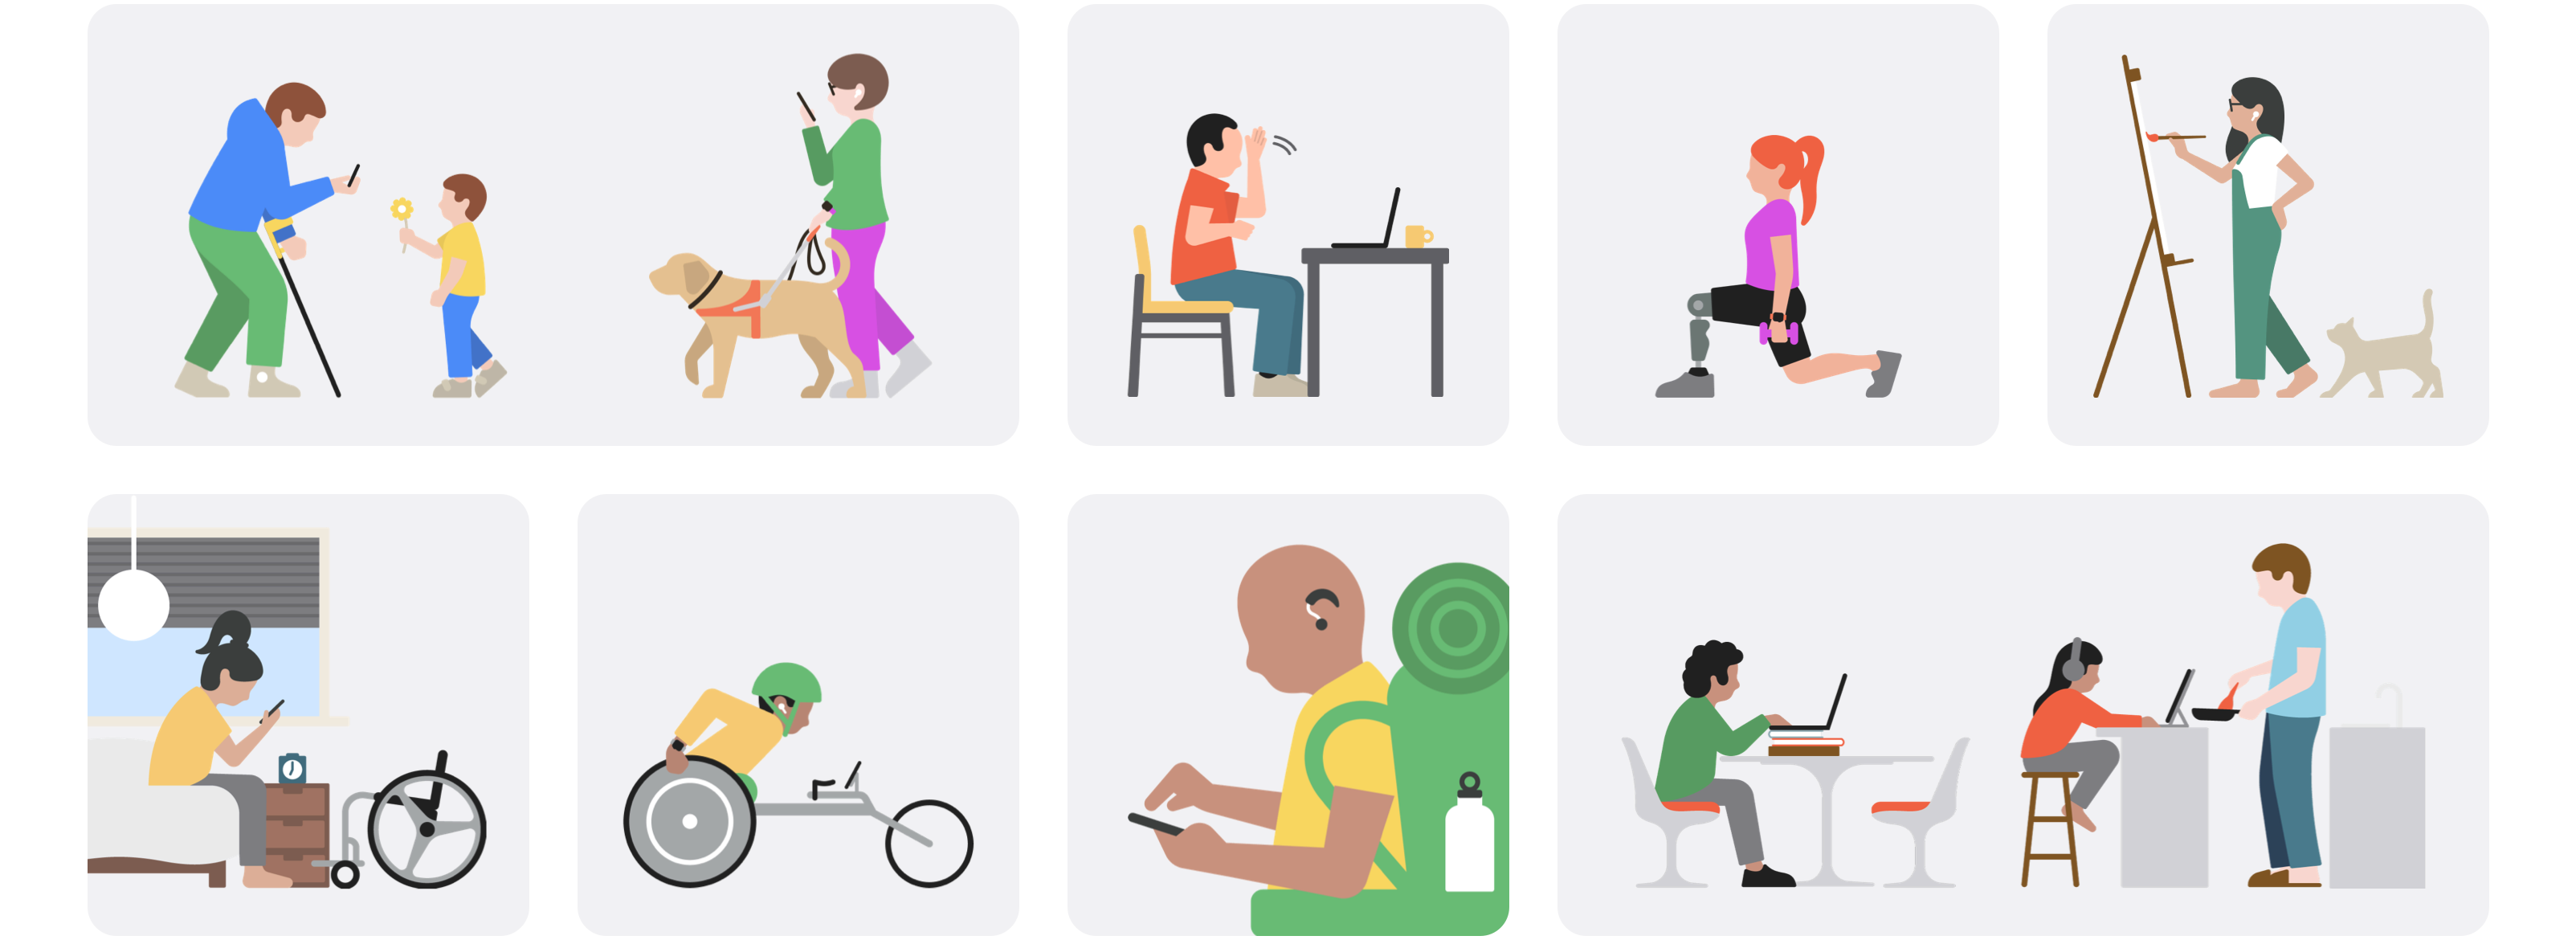 Illustrations de différents handicaps pour la journée de sensibililsation à l'accessibilité